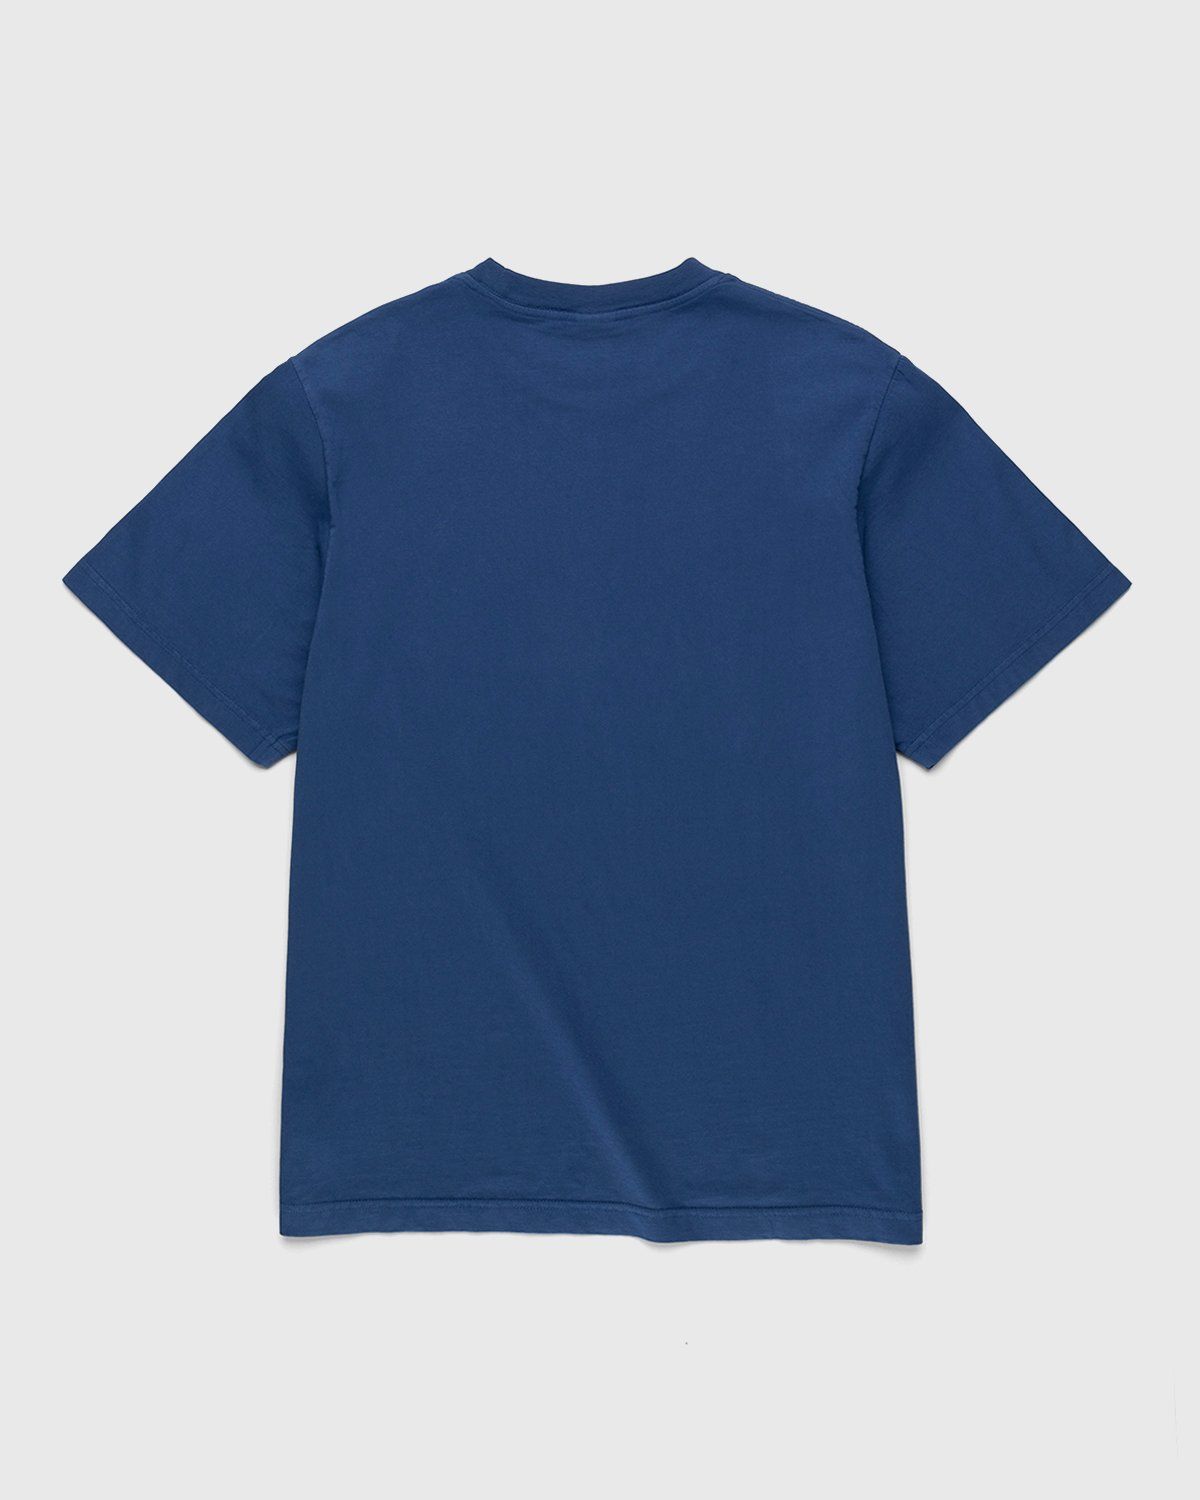 Noon Goons – My Block Tshirt Navy - T-Shirts - Blue - Image 2